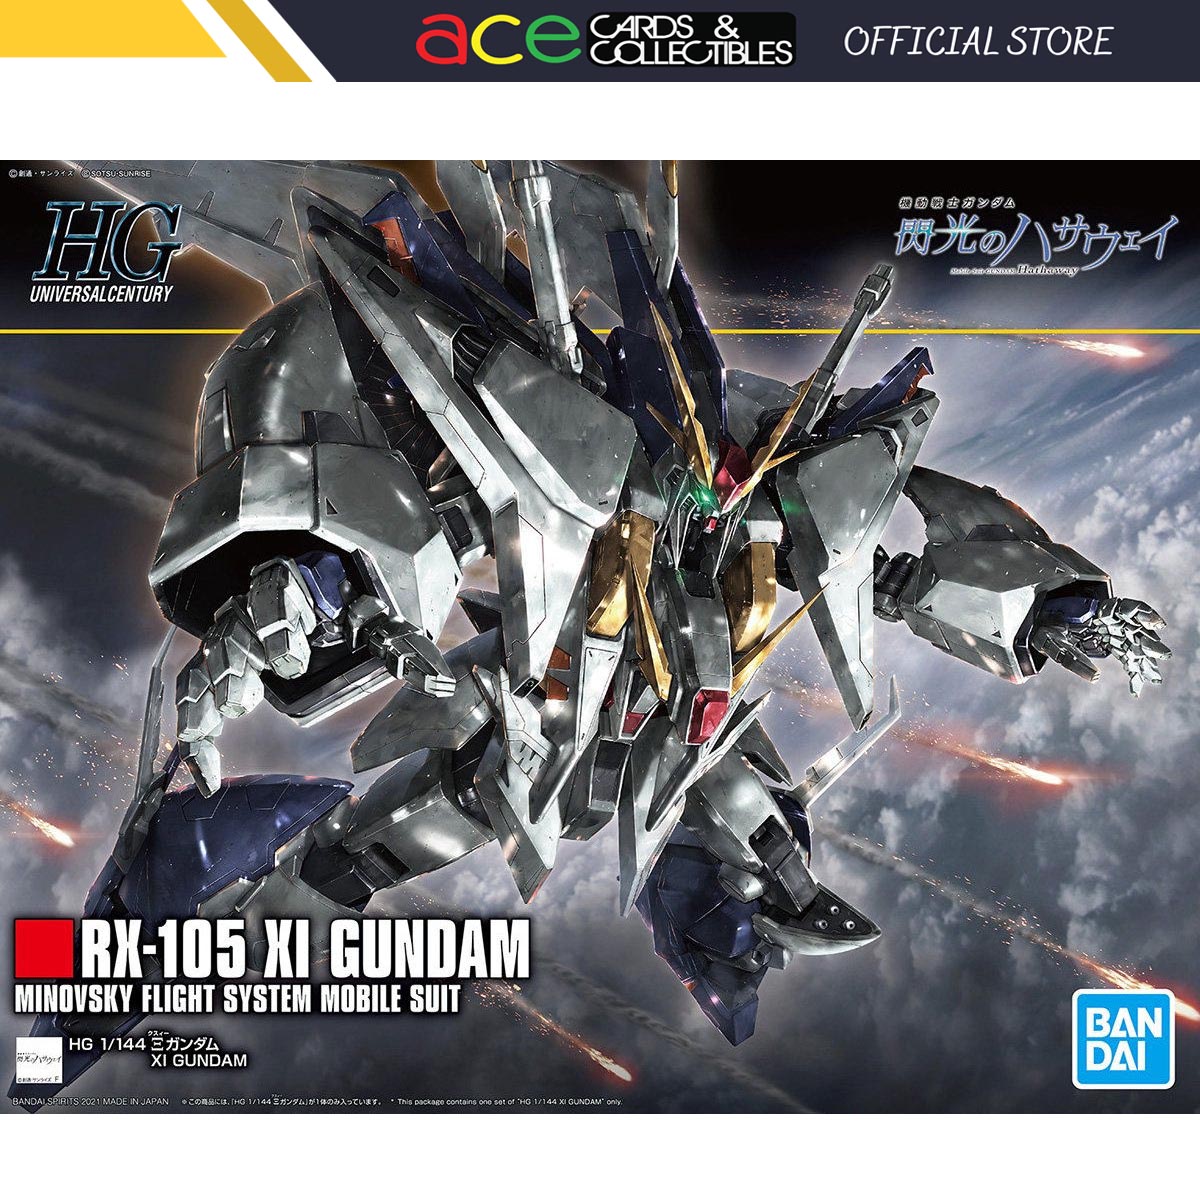 1/144 HGUC Xi Gundam-Bandai-Ace Cards & Collectibles